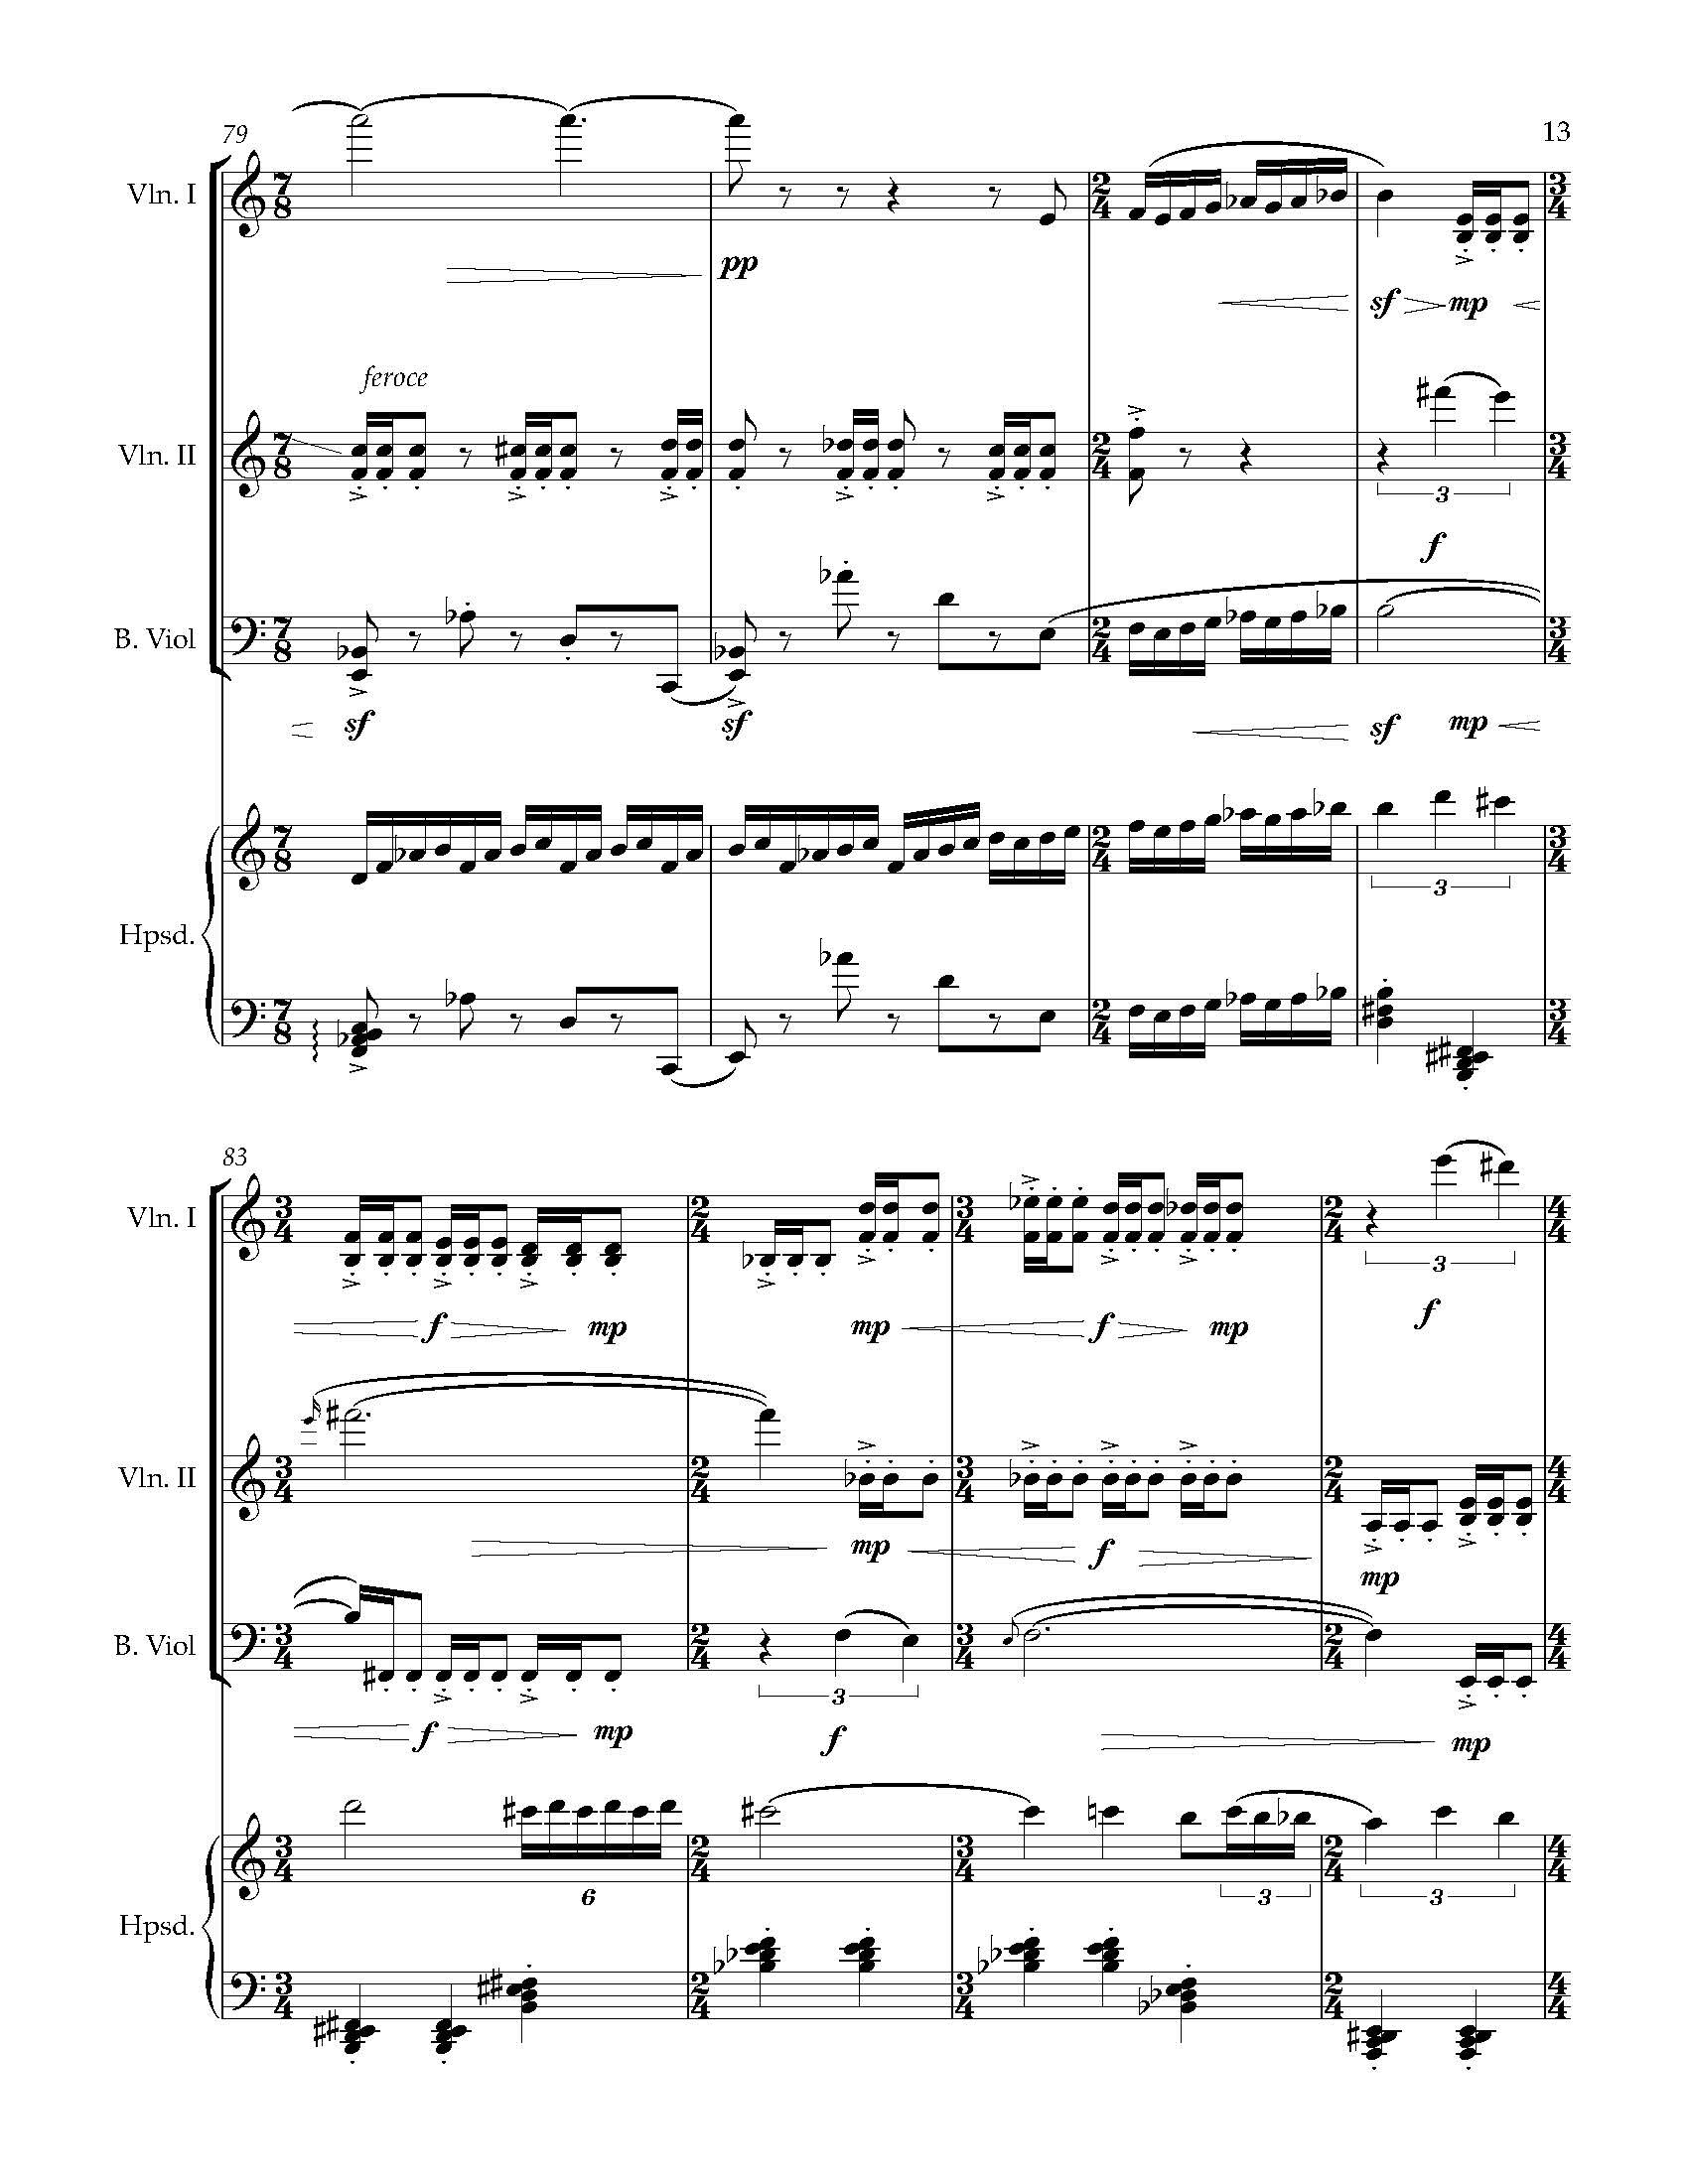 Sonata Sonare - Complete Score_Page_19.jpg